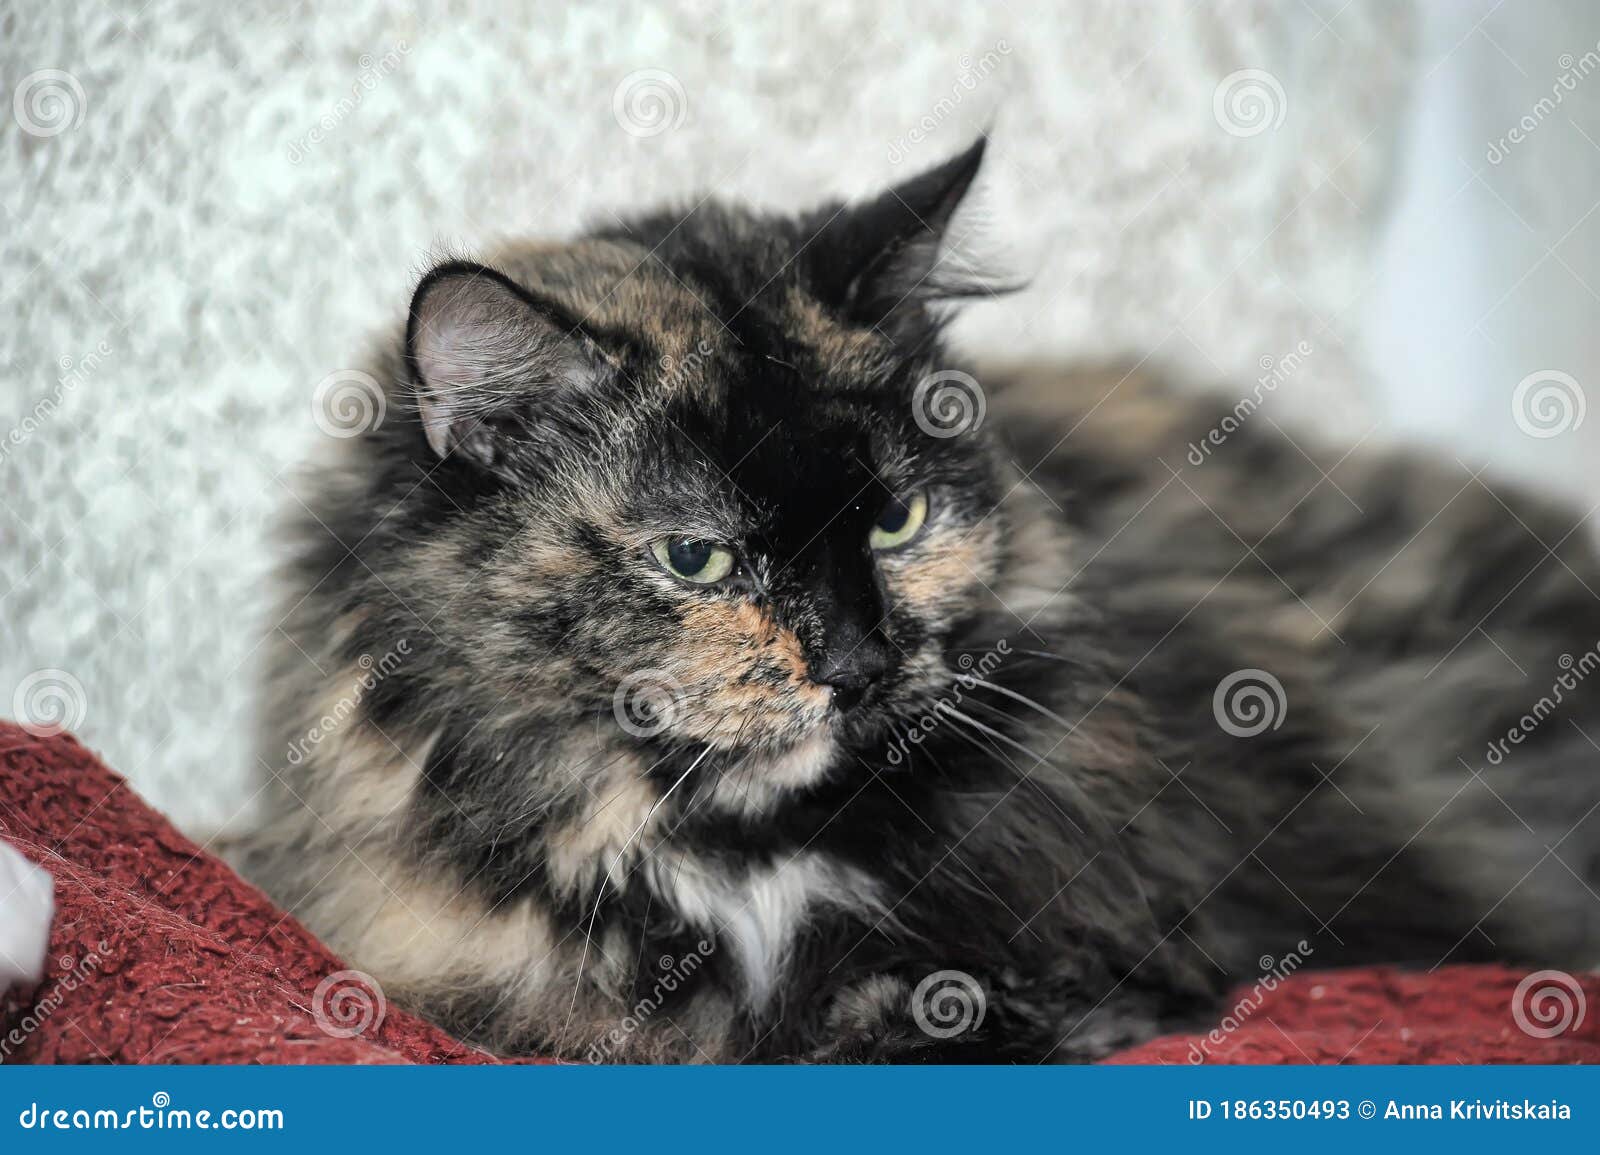 female cat,  cat with three colors